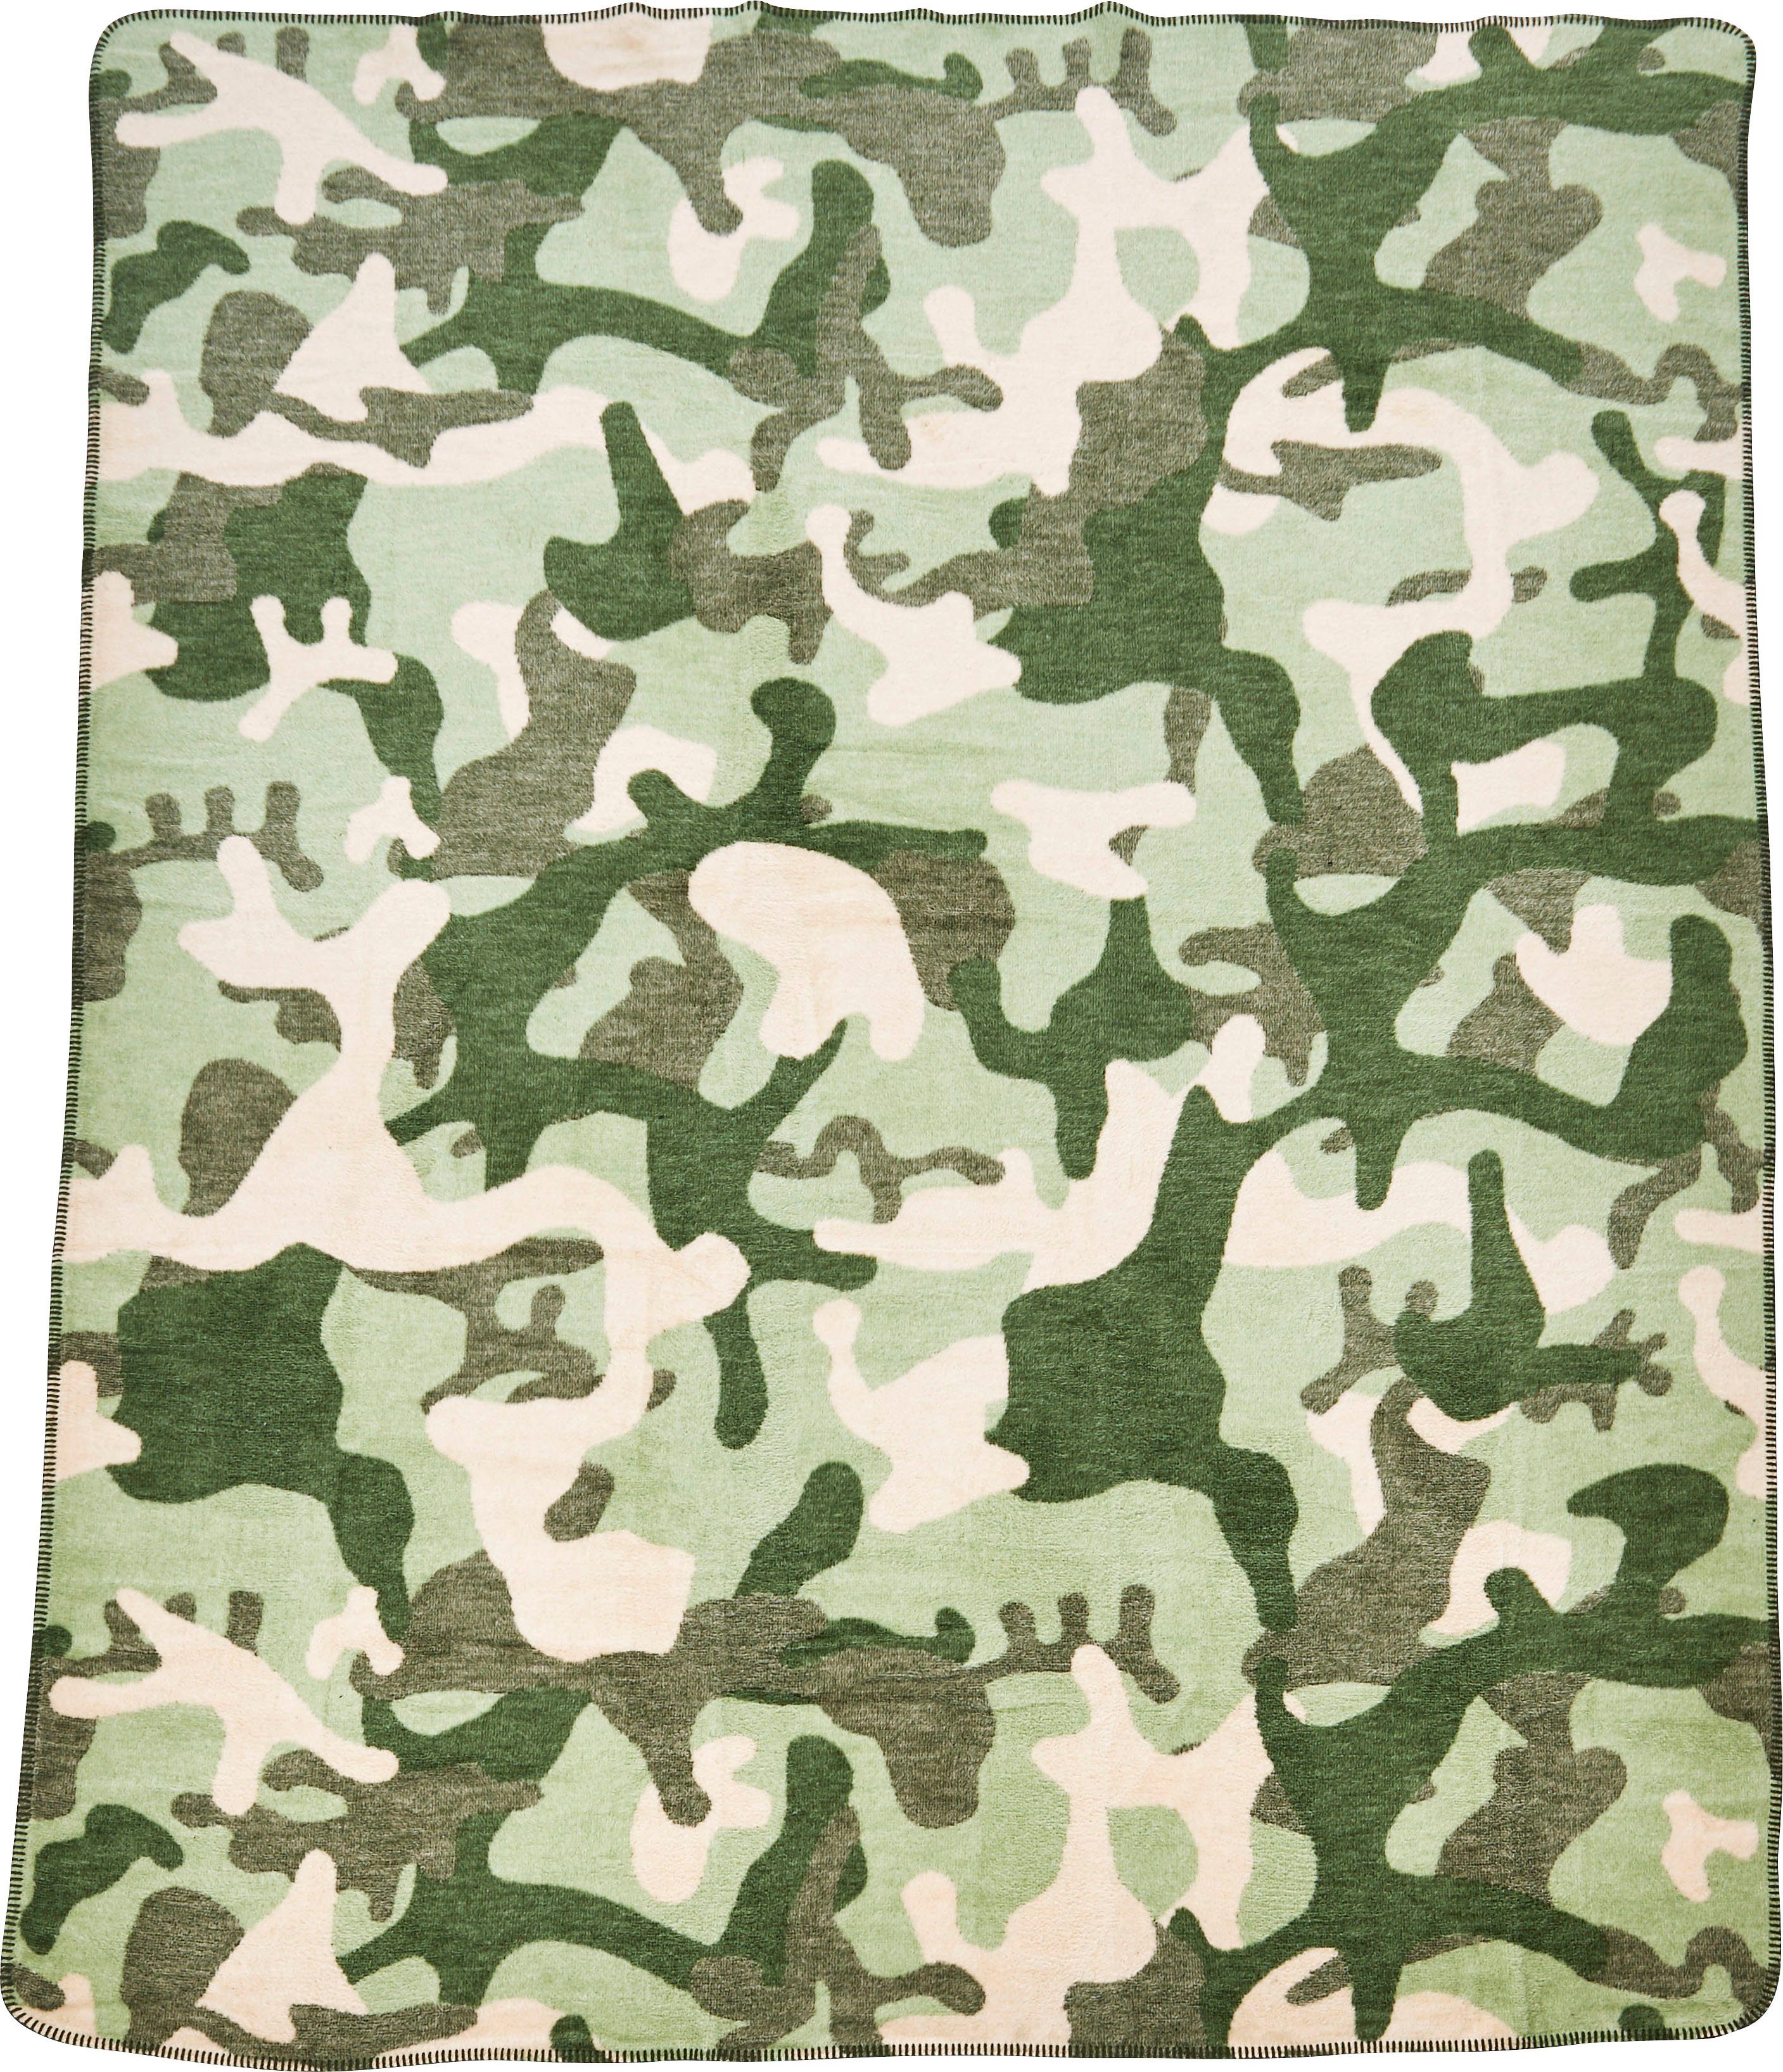 【Juwel】 done.®, Ziernaht, Camouflage, Wohndecke einfassender Kuscheldecke Wohndecke khaki/grün/beige mit